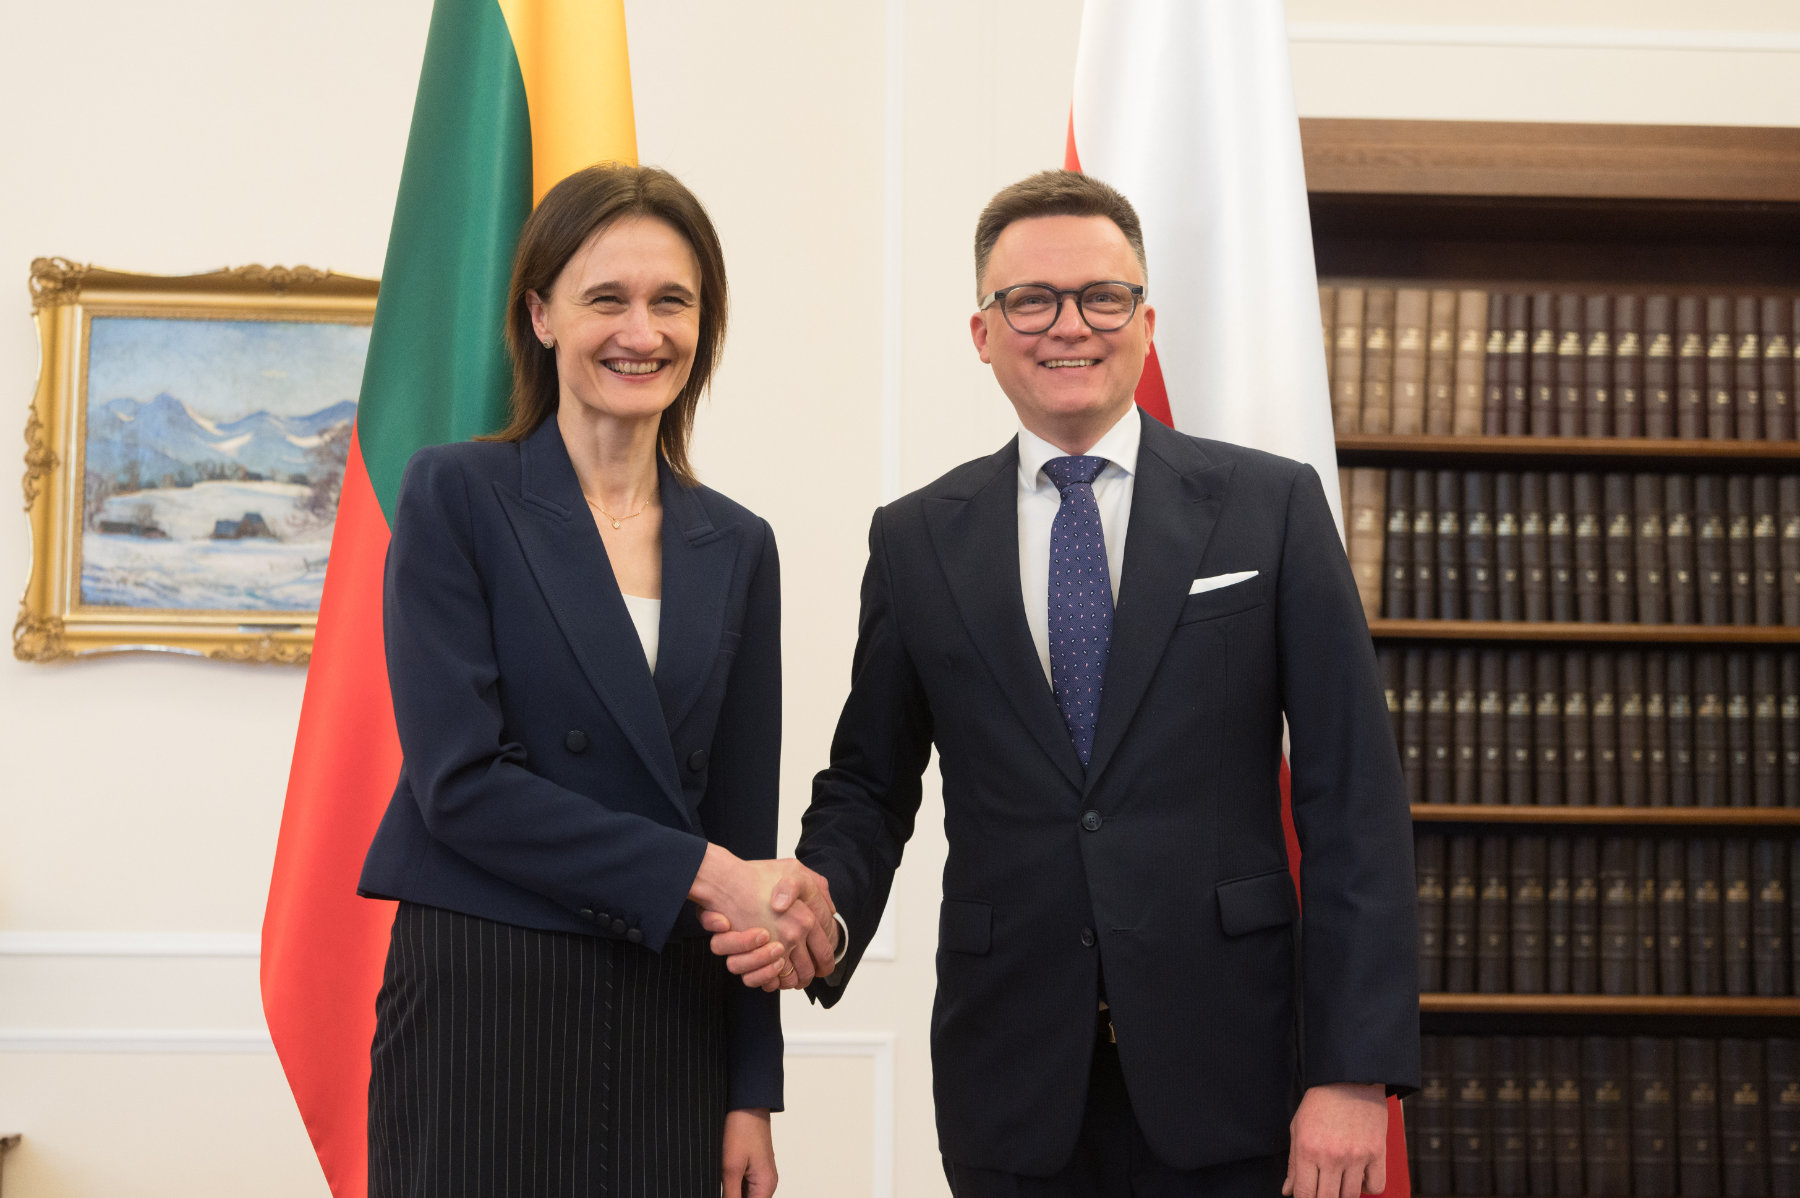 Viktorija Čmilytė-Nielsen i Szymon Hołownia podczas spotkania w Warszawie zapewnili, że kraje łączy strategiczne partnerstwo.